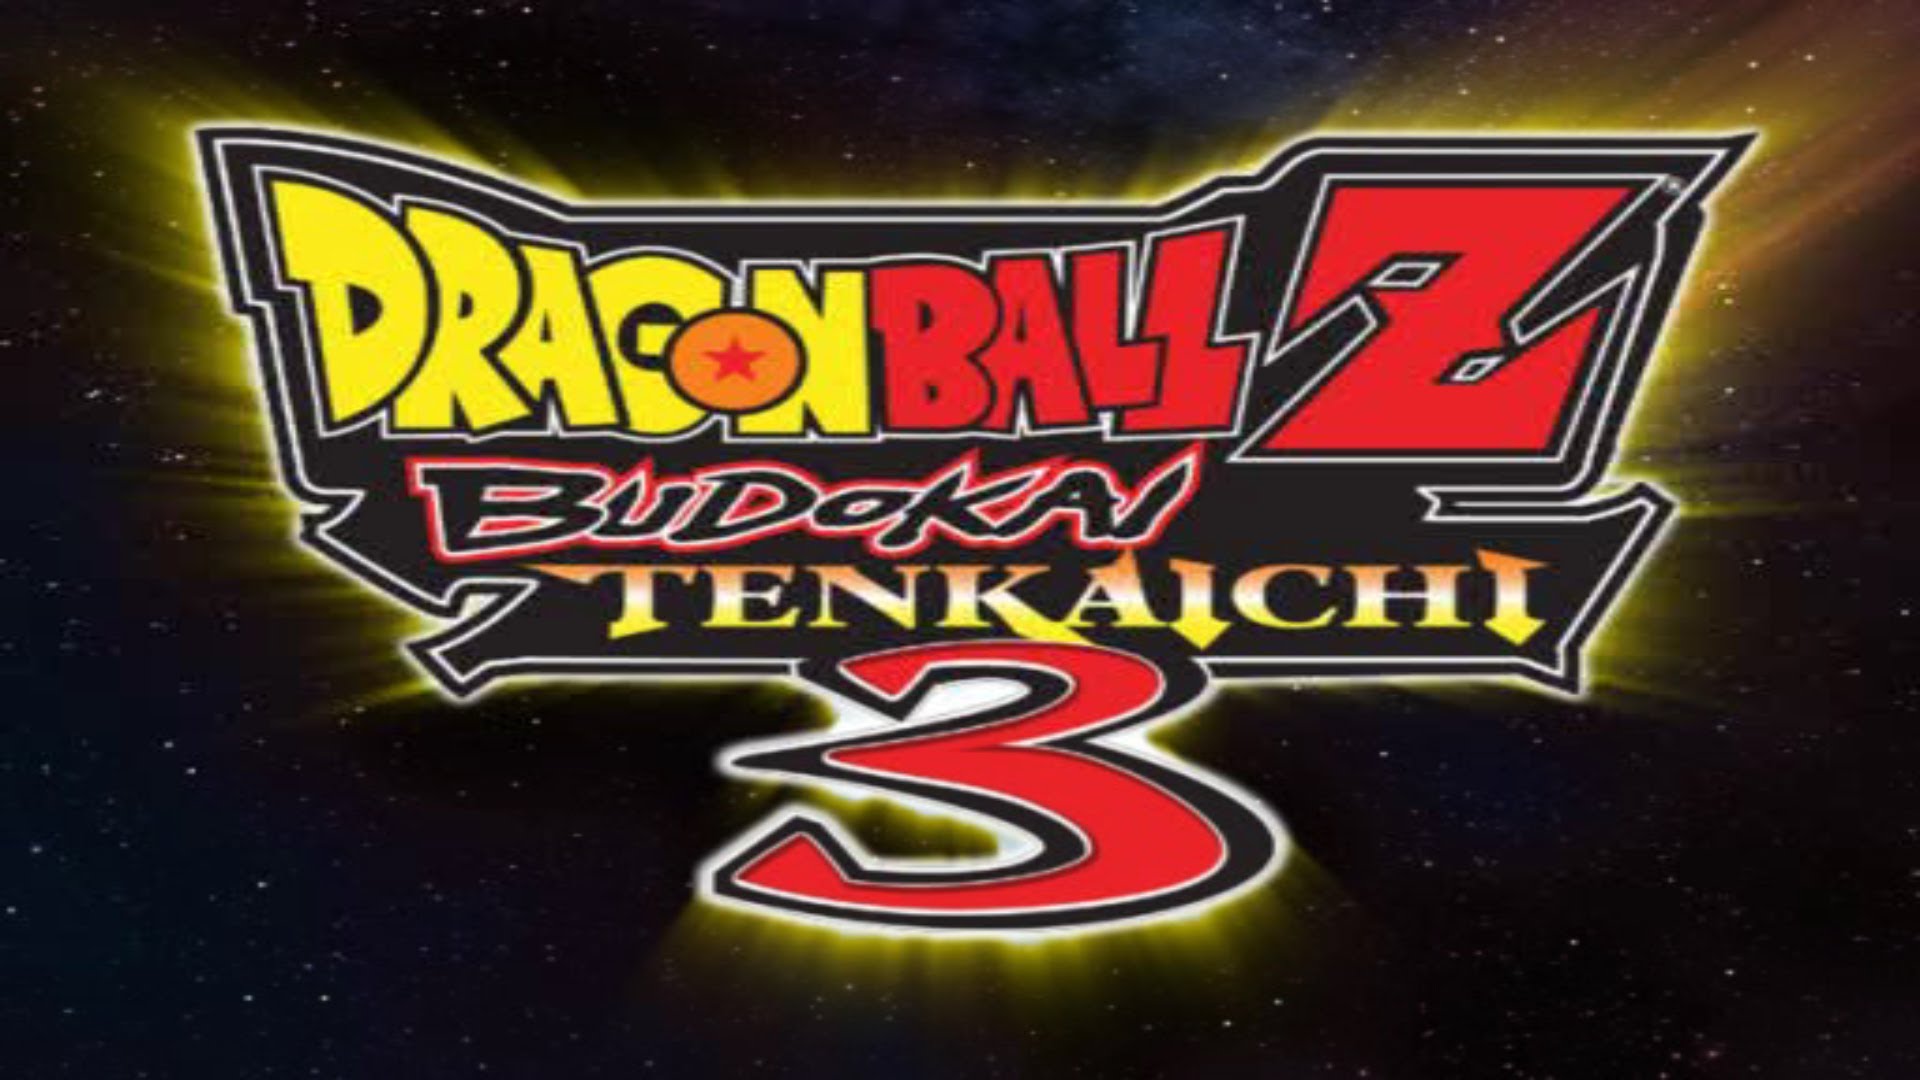 HQ Dragon Ball Z: Budokai Tenkaichi 3 Wallpapers | File 196.32Kb